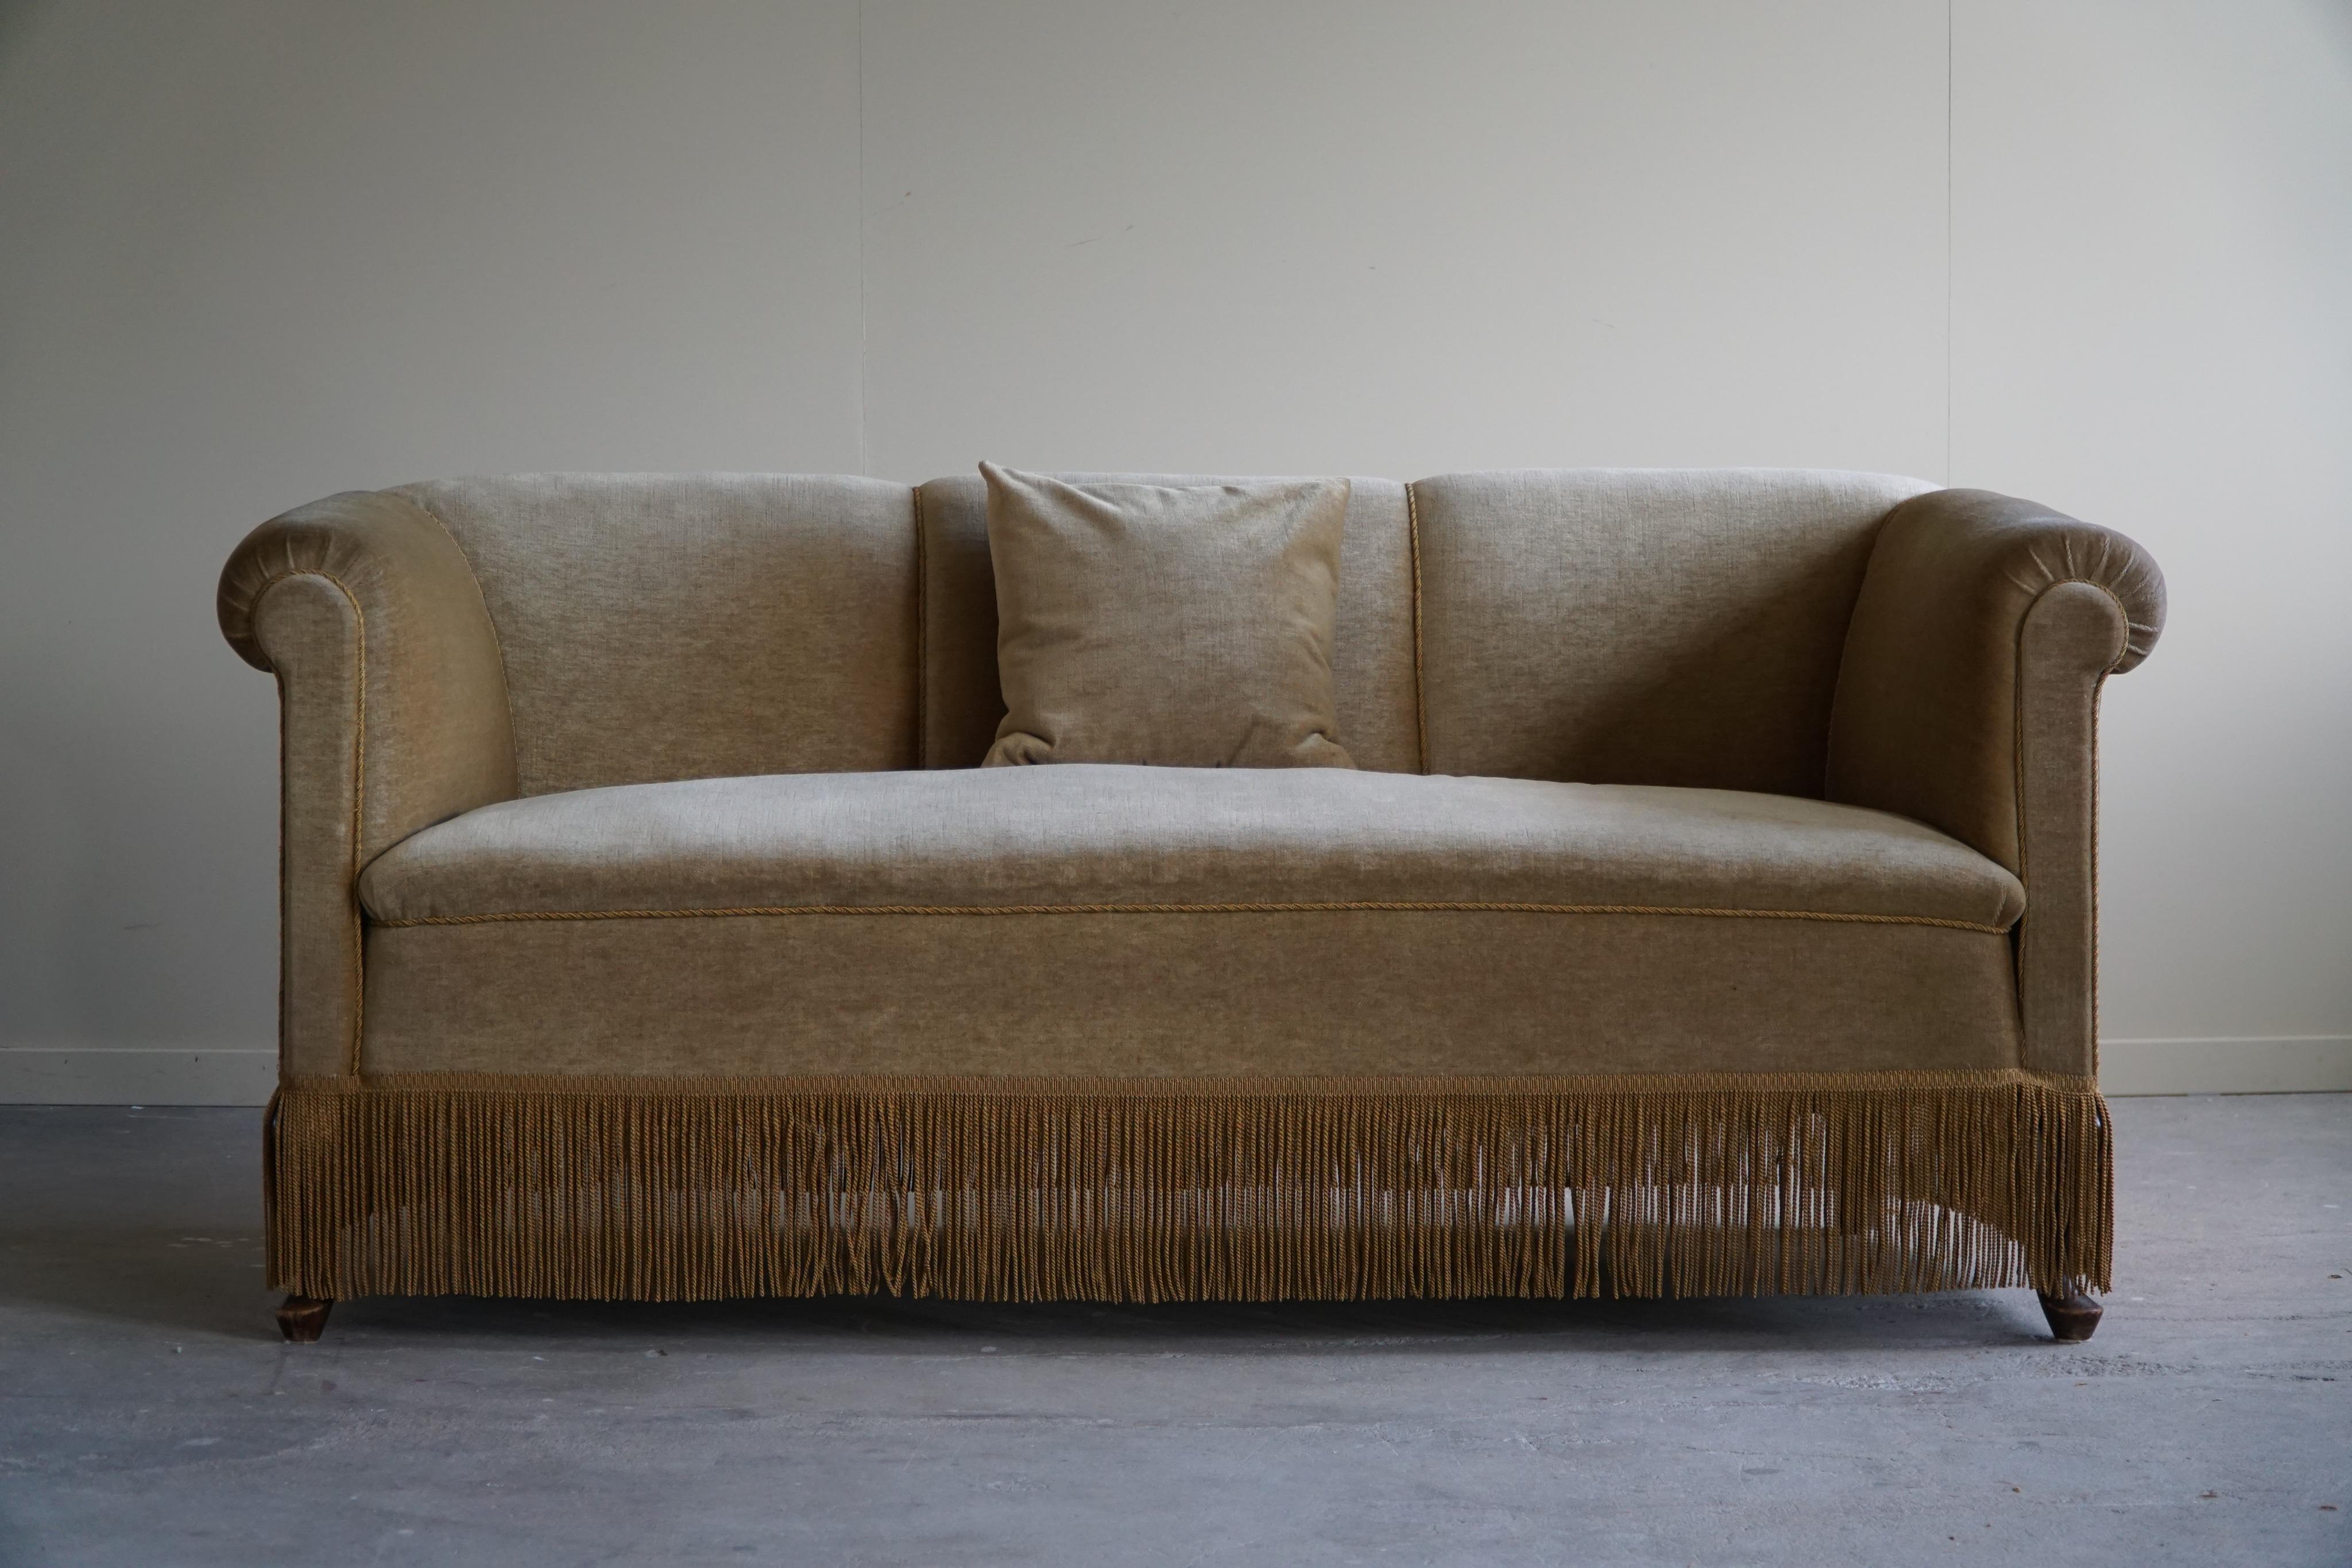 Dieses ansprechende Zweisitzer-Sofa aus grünem Velours zeigt die bemerkenswerte Handwerkskunst eines dänischen Tischlers aus der Zeit des Art déco in den 1940er Jahren. Dieses Sofa strahlt Eleganz und Raffinesse aus, indem es die luxuriöse